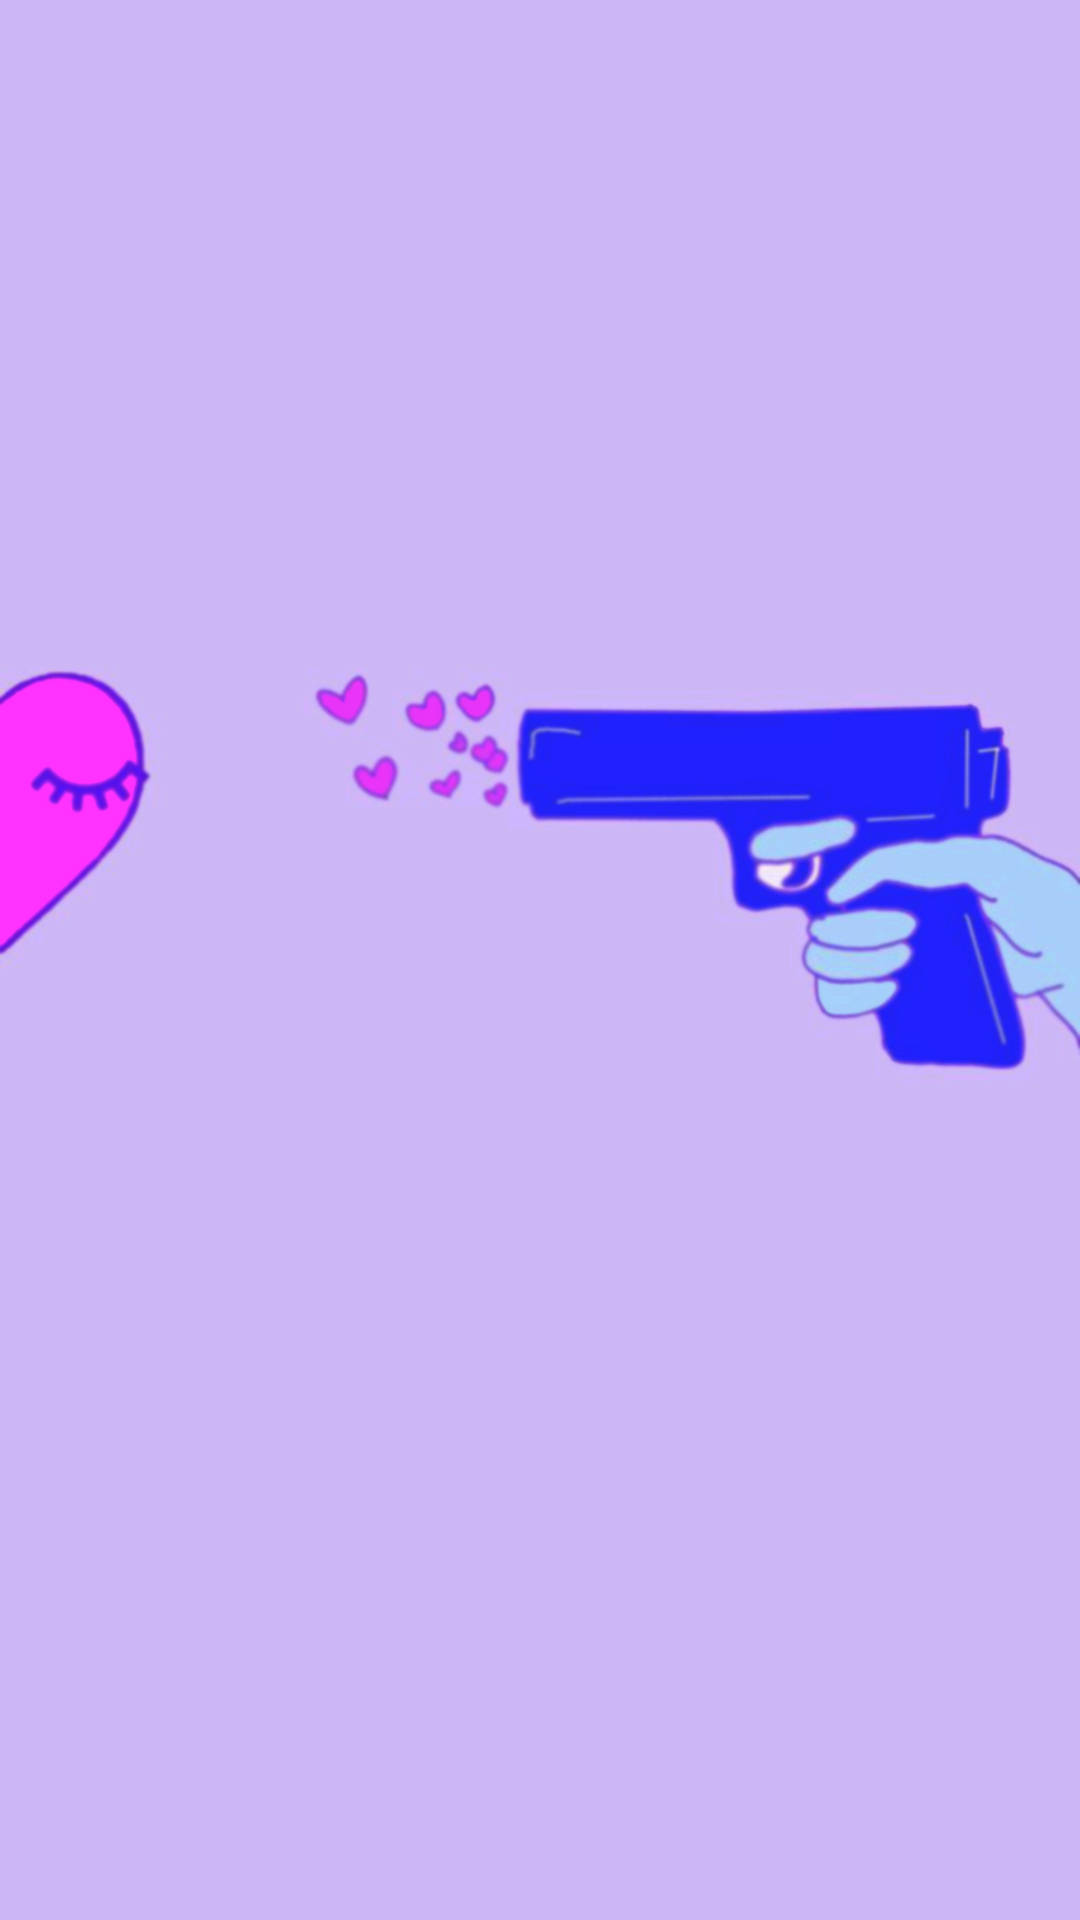 Matching Right Love Gun